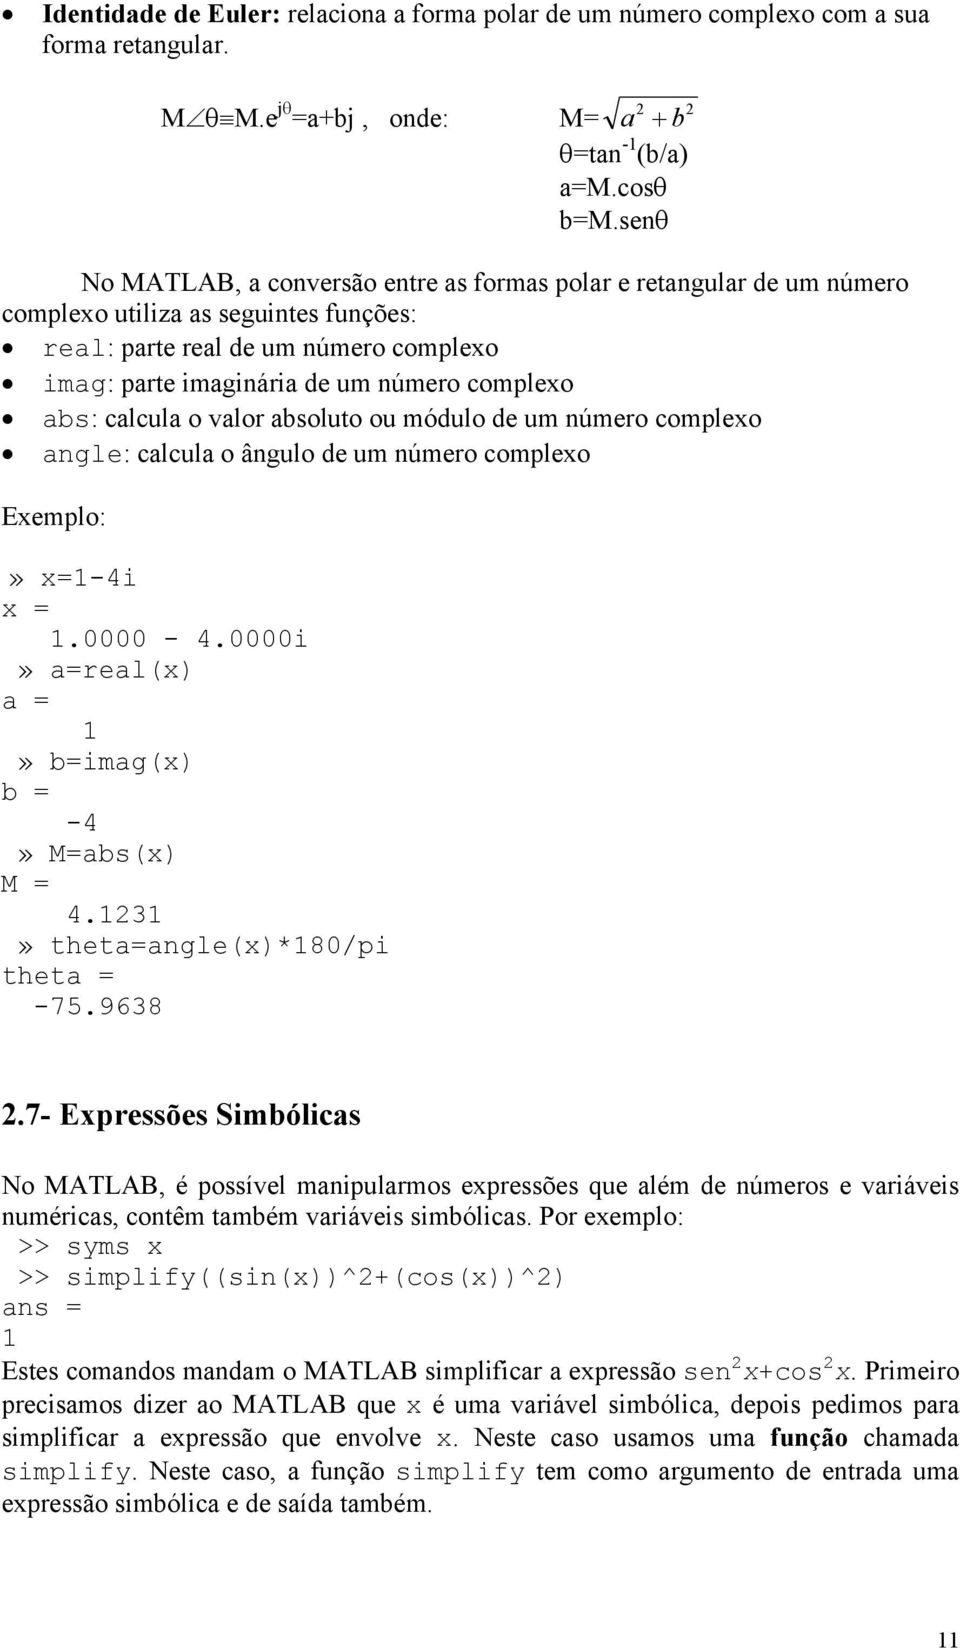 abs: calcula o valor absoluto ou módulo de um número complexo angle: calcula o ângulo de um número complexo Exemplo:» x=1-4i x = 1.0000-4.0000i» a=real(x) a = 1» b=imag(x) b = -4» M=abs(x) M = 4.